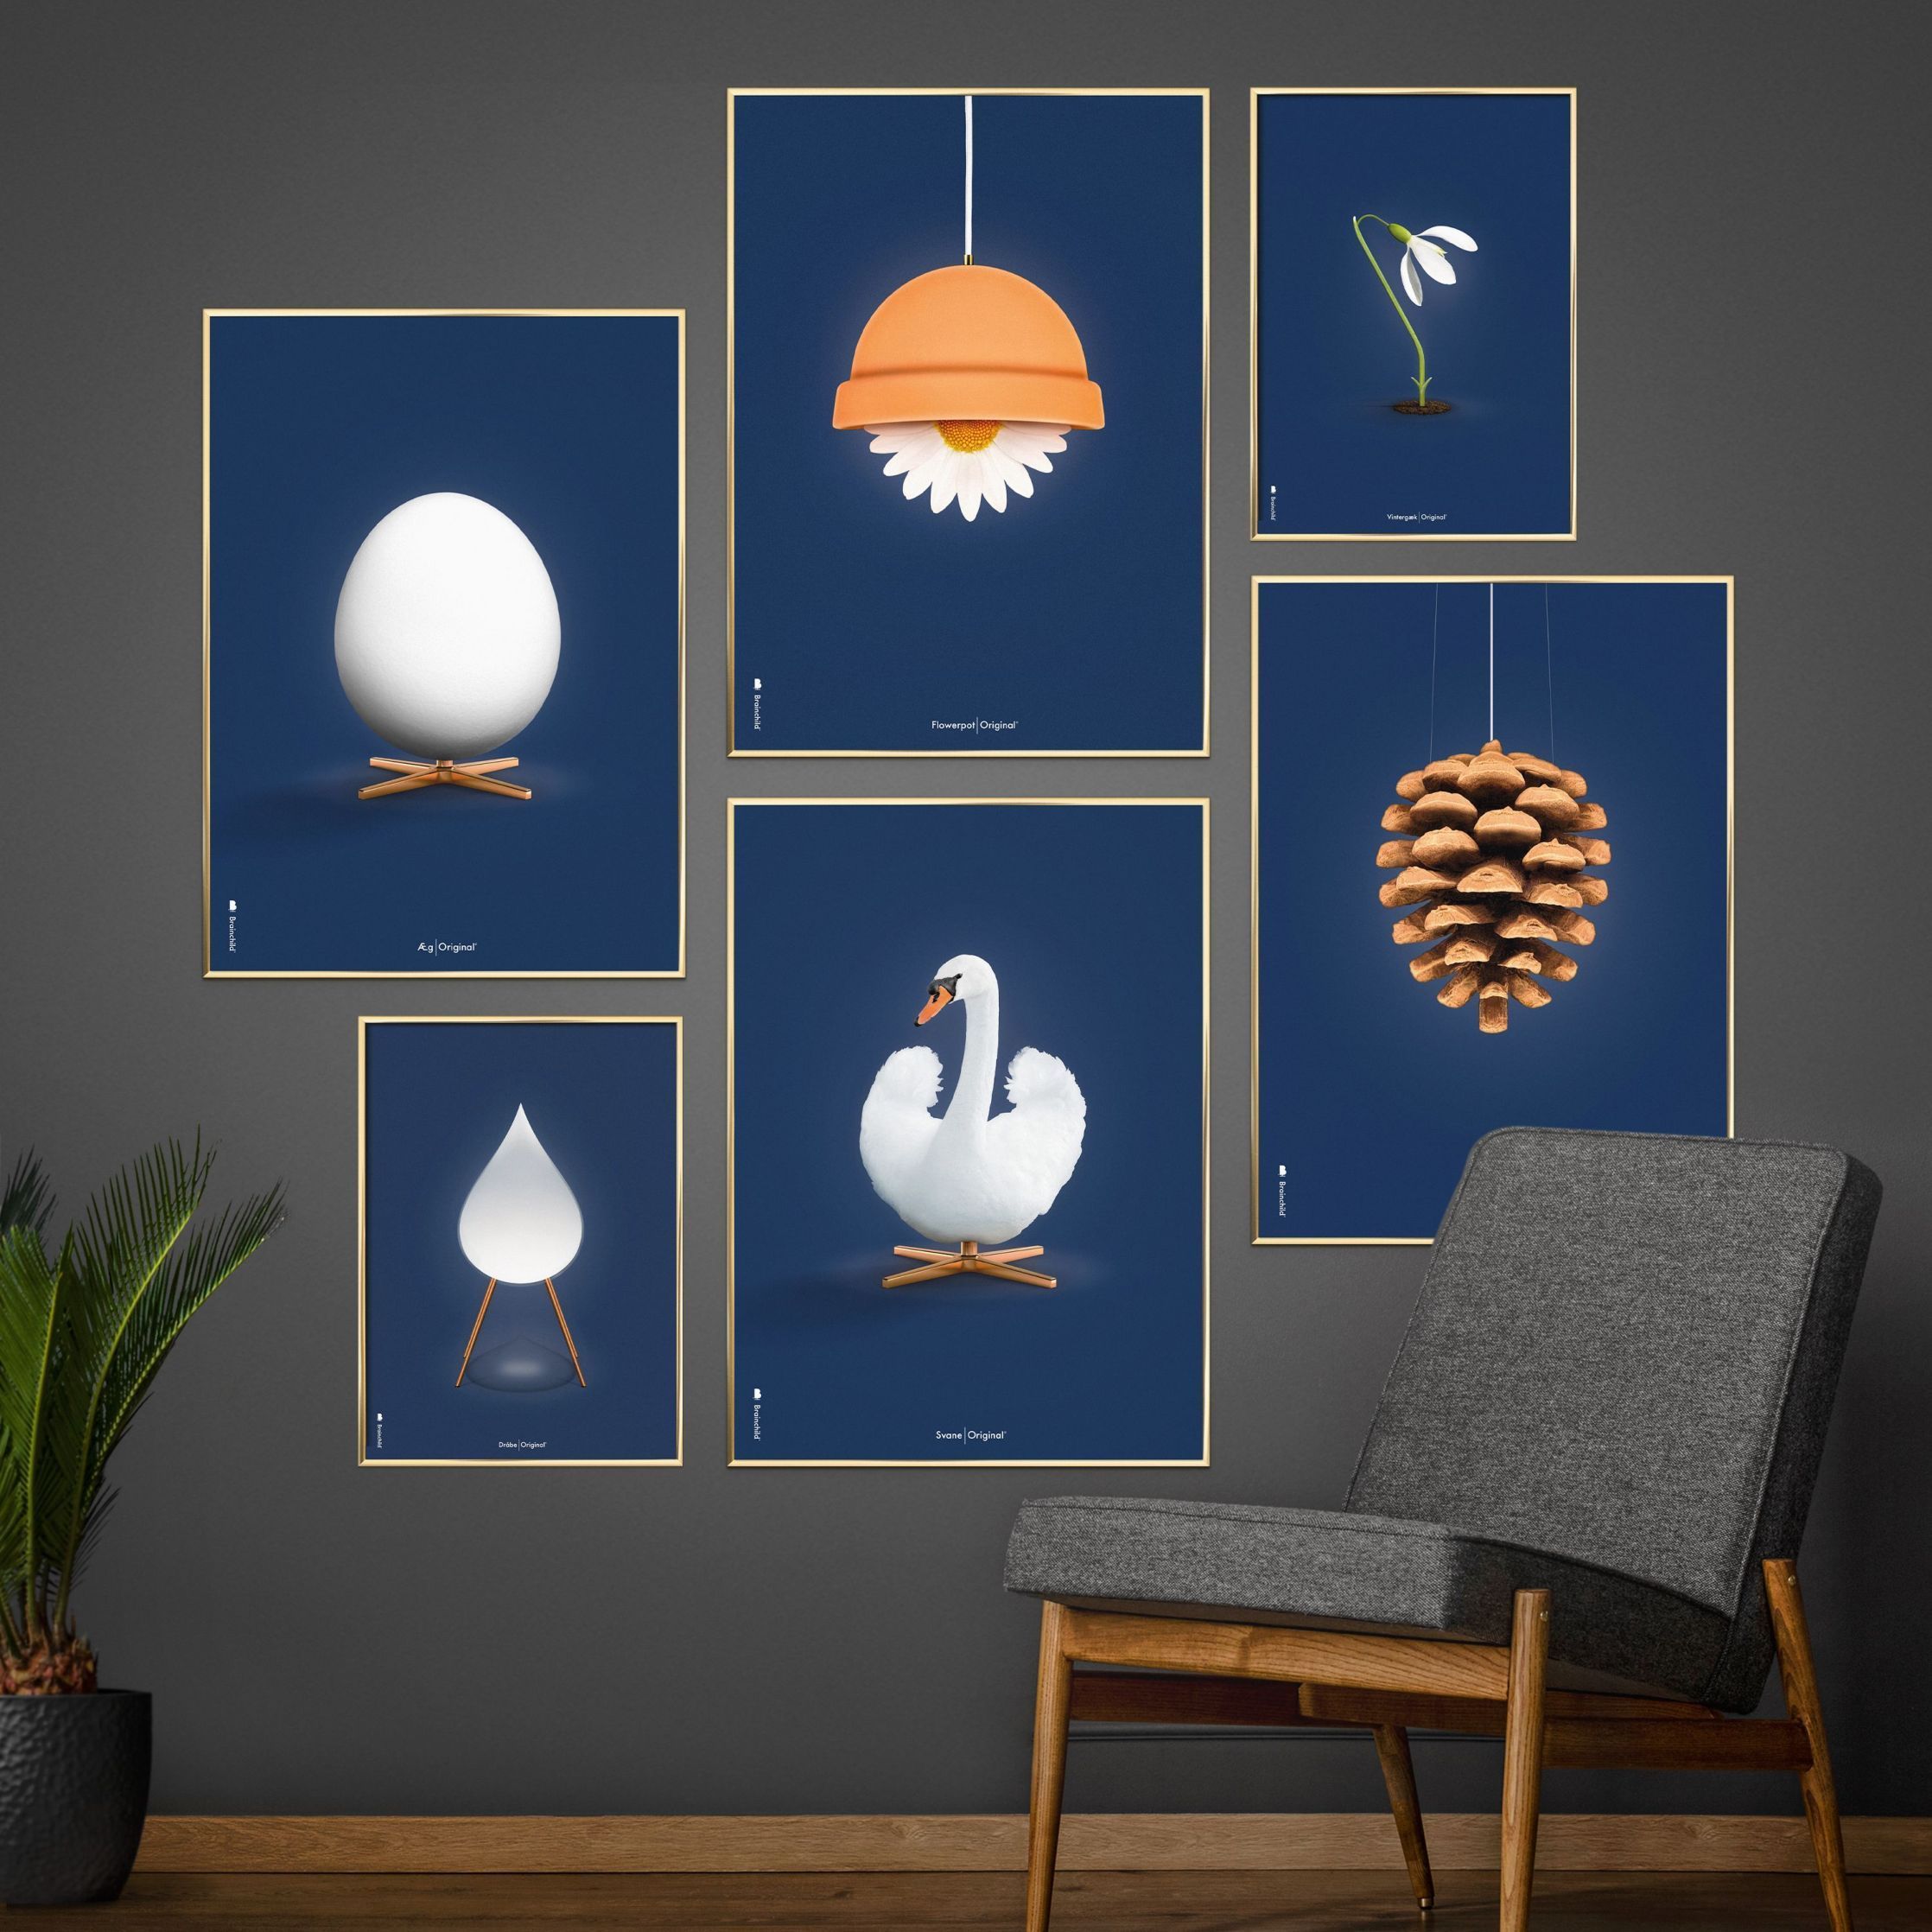 Brainchild Egg Classic Poster ohne Rahmen 50 X70 cm, dunkelblauer Hintergrund